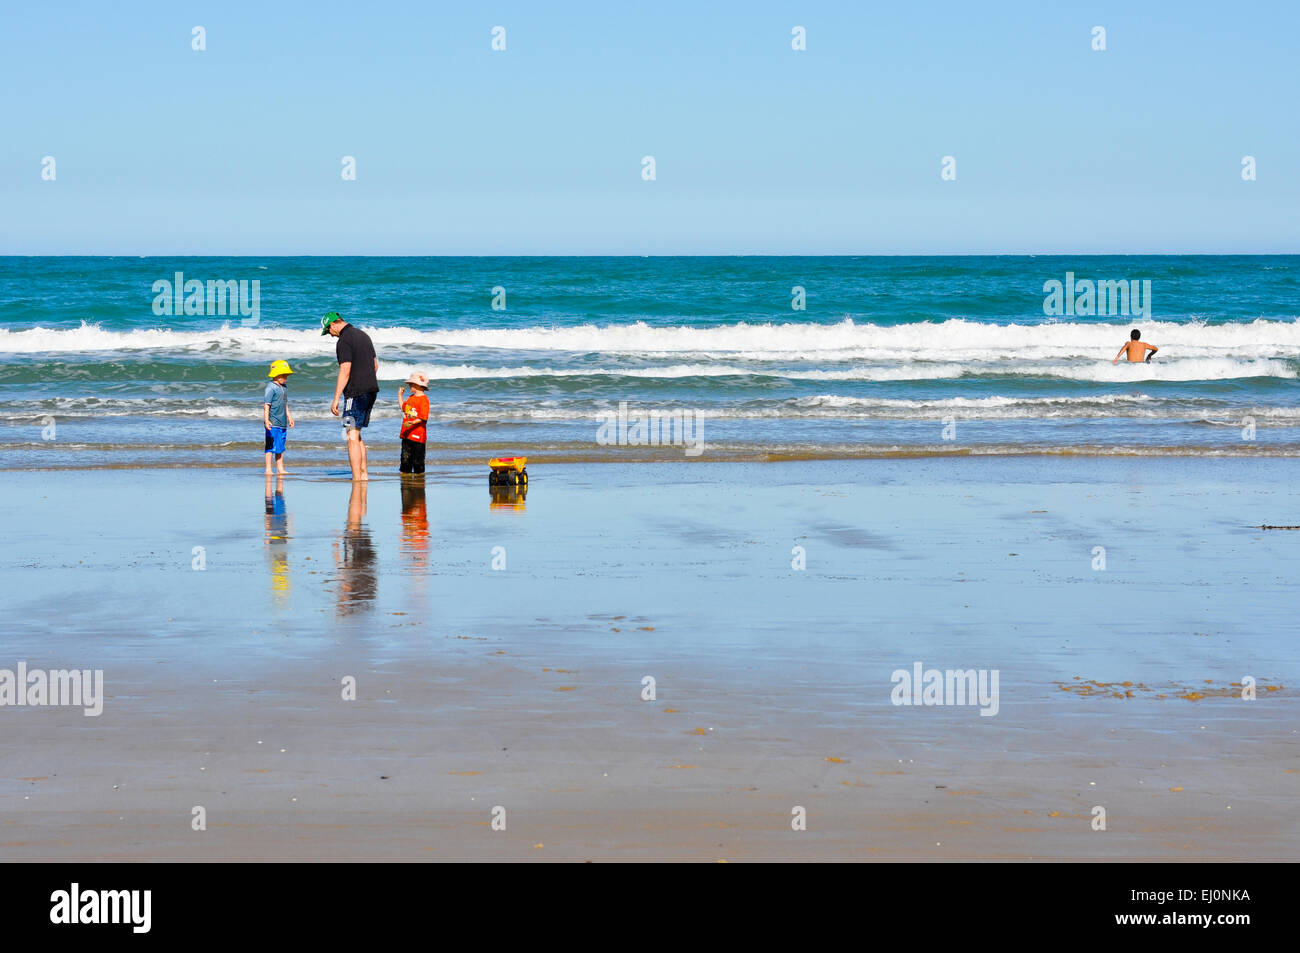 Famille jouant sur la plage Australienne avec swimmer entrant dans le surf sur le côté droit de l'image. Banque D'Images